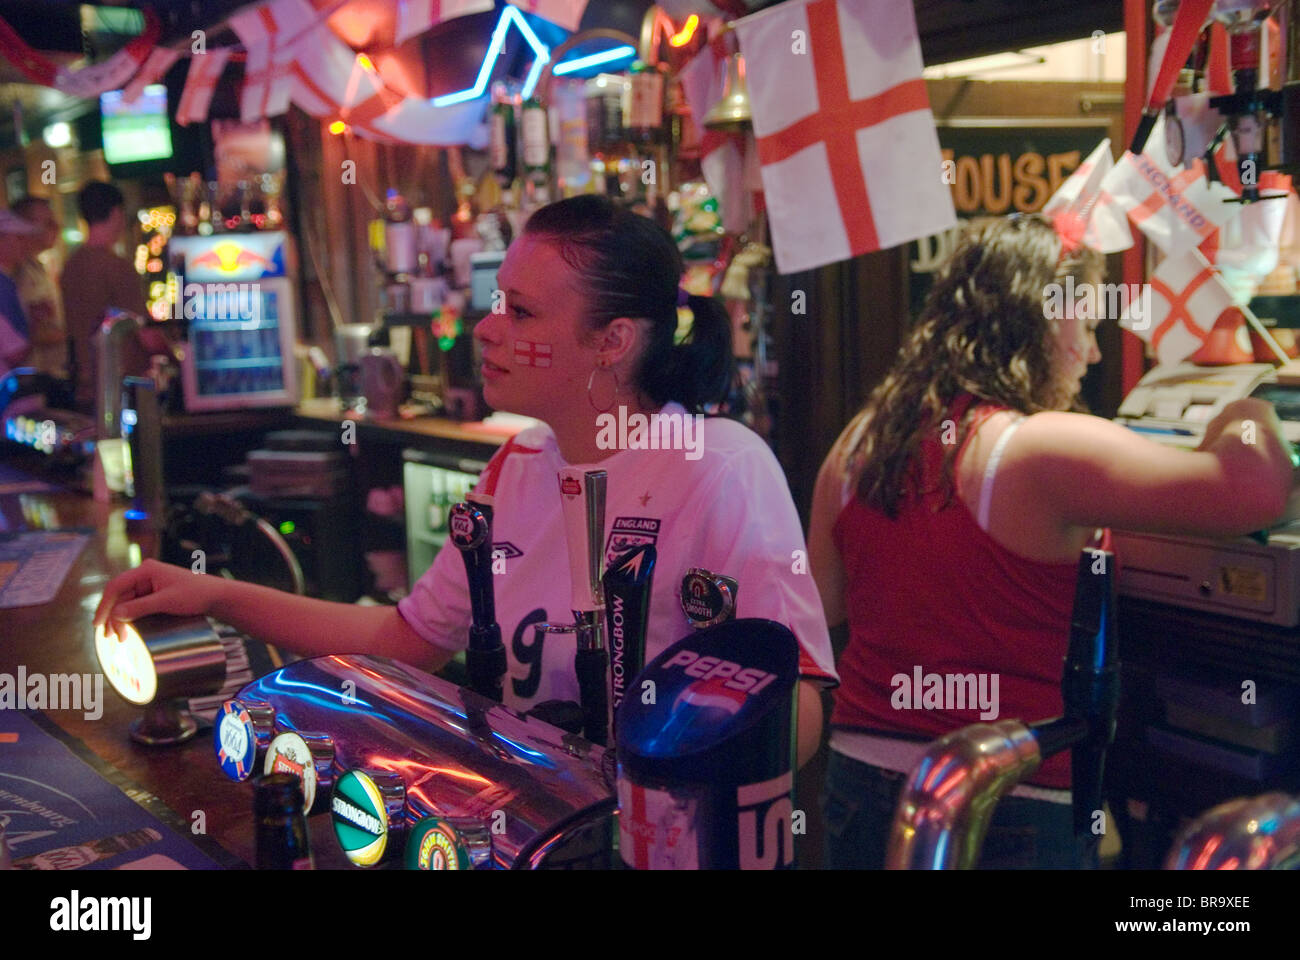 Les femmes d'intérieur Pub tirant pintes de bière, intérieurs décorés de drapeaux Union Jack anglais célèbre match de football Coupe du Monde 2006 2000s HOMER SYKES Banque D'Images